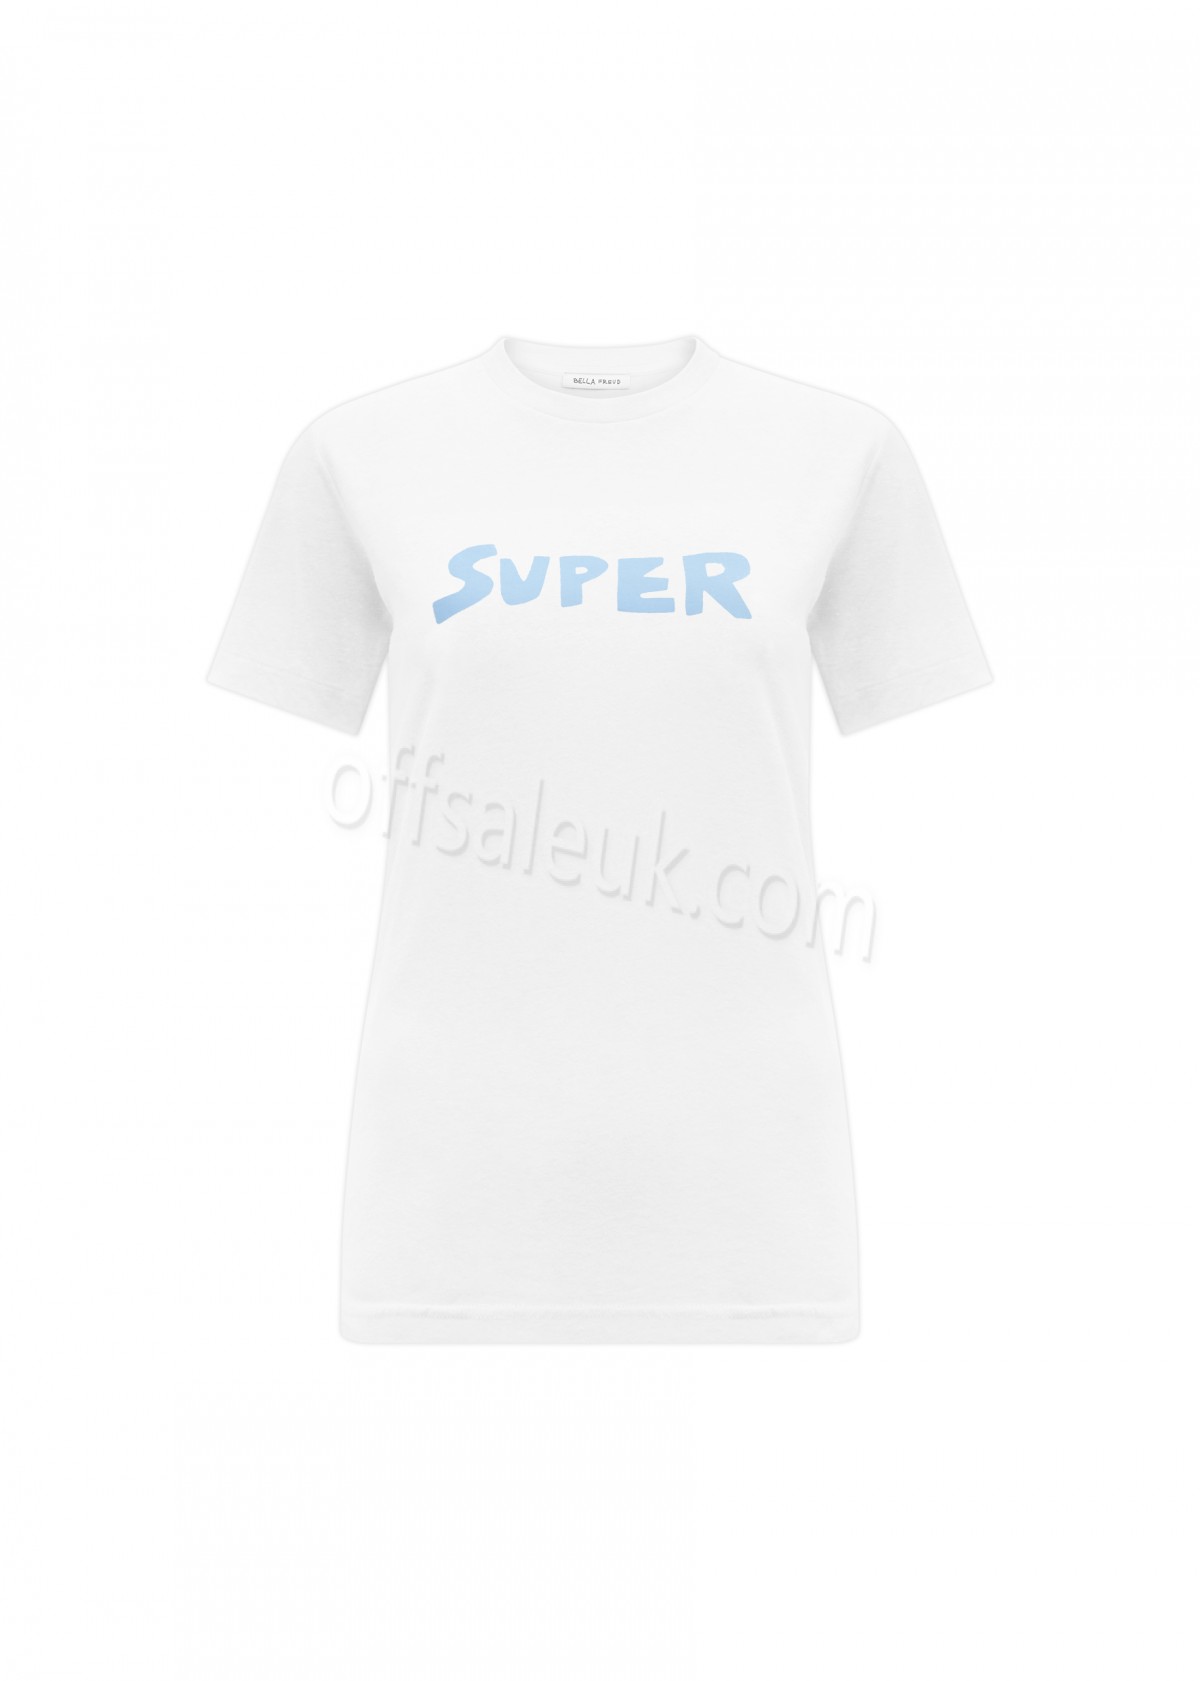 Discount Super T-Shirt - -0